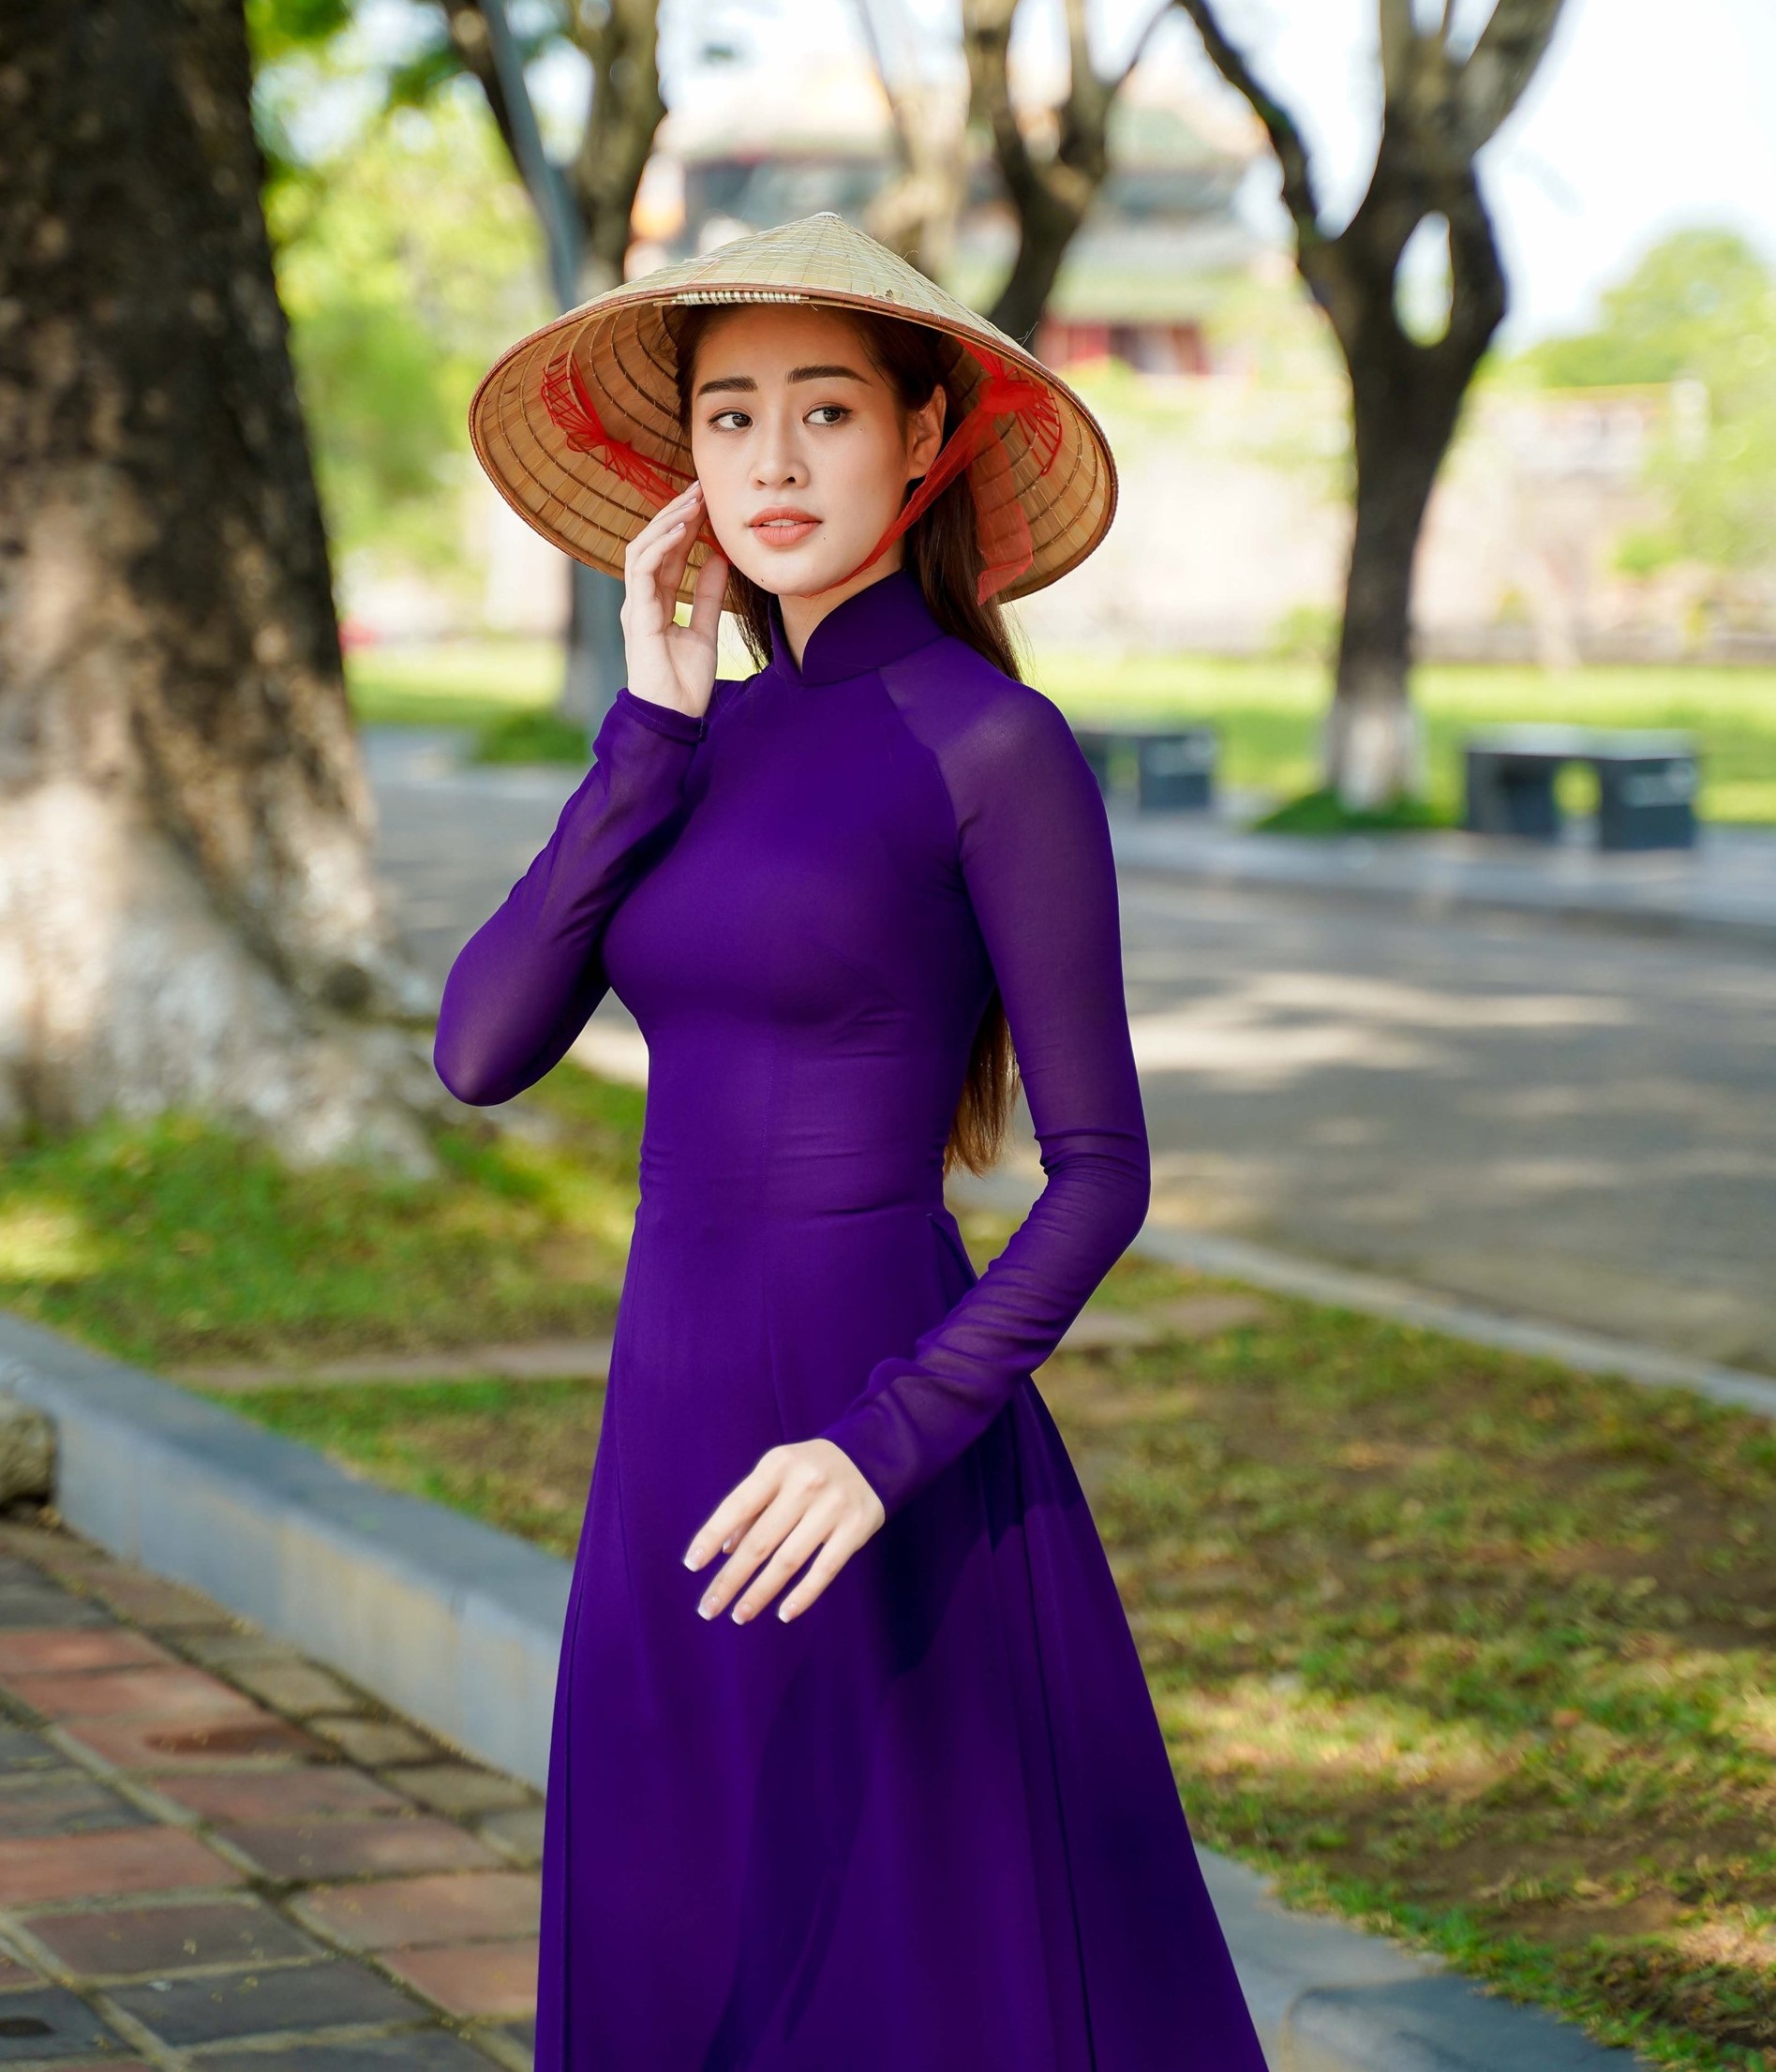 Hoa hậu hoàn vũ Khánh Vân dịu dàng trong tà áo dài tím và chiếc nón lá